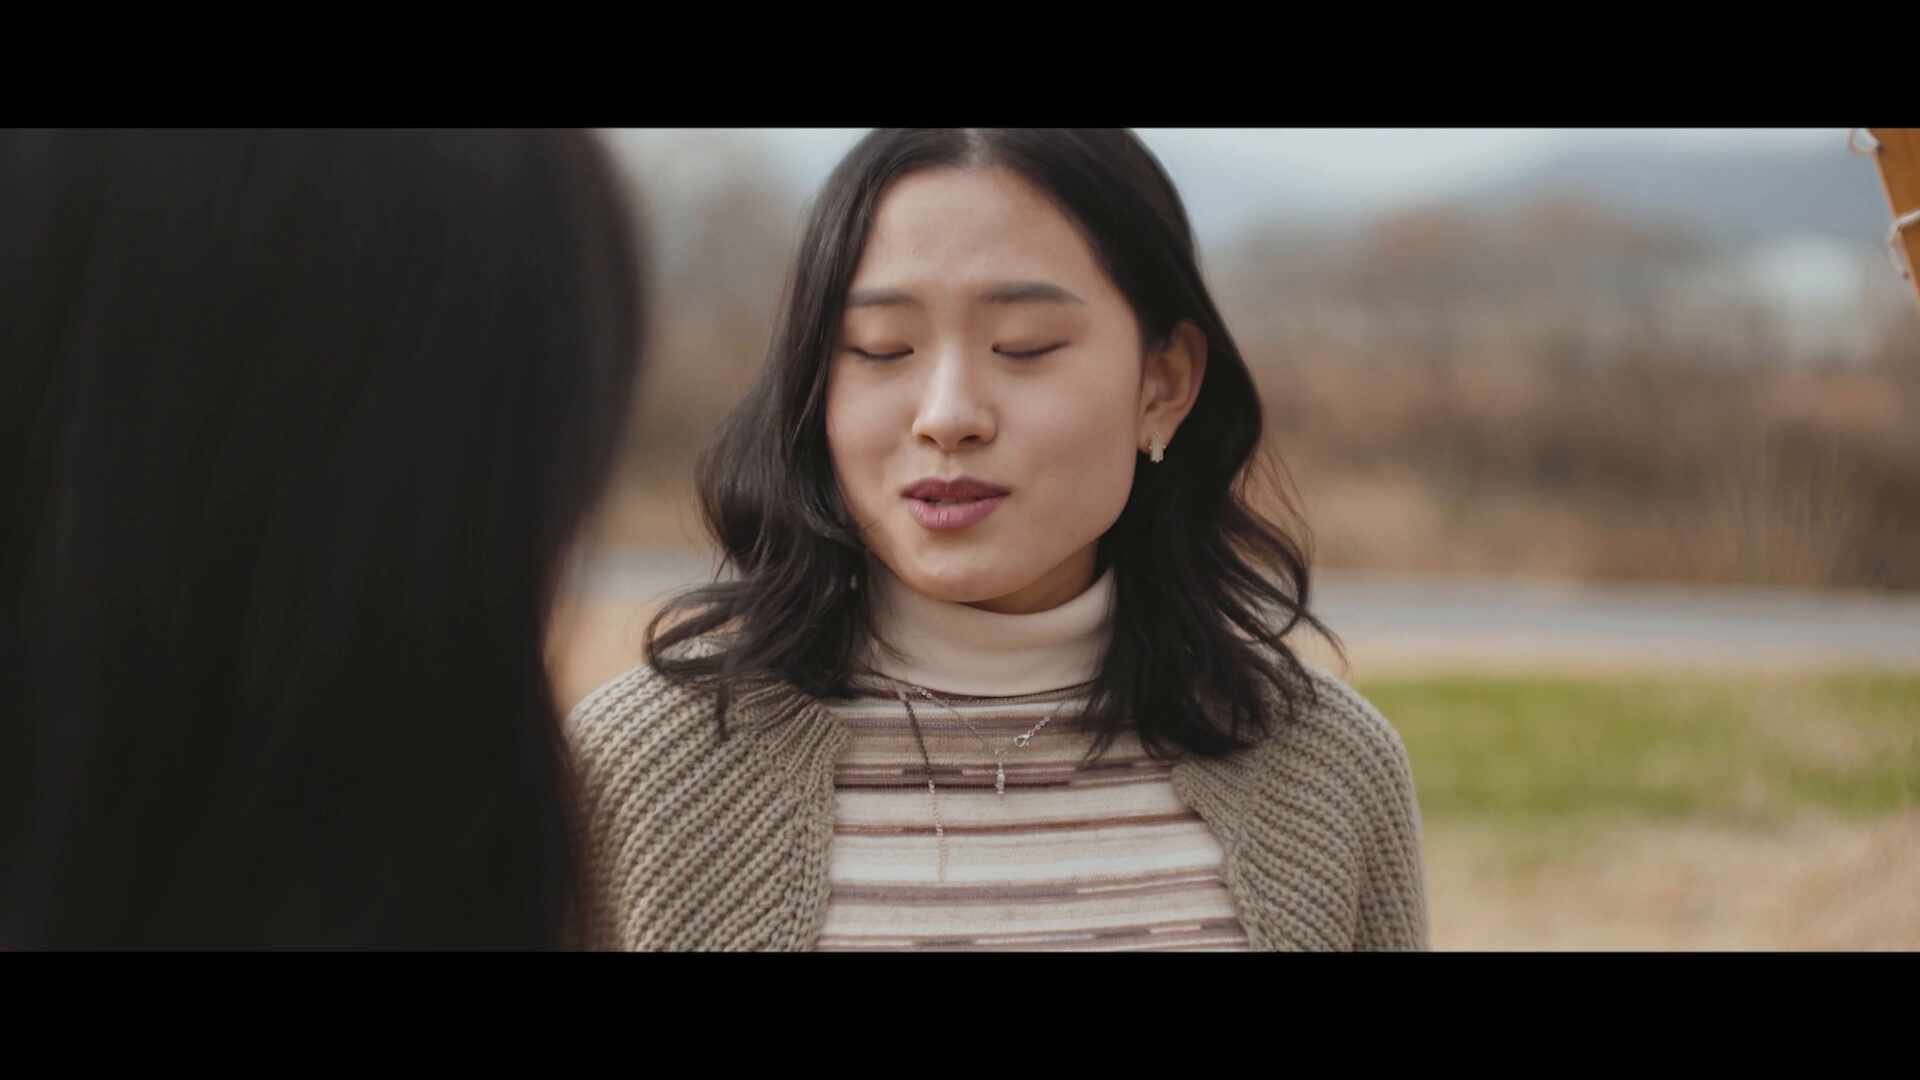 제 10회 영상왕 콘테스트 공모전 - 이지혜 - 치기